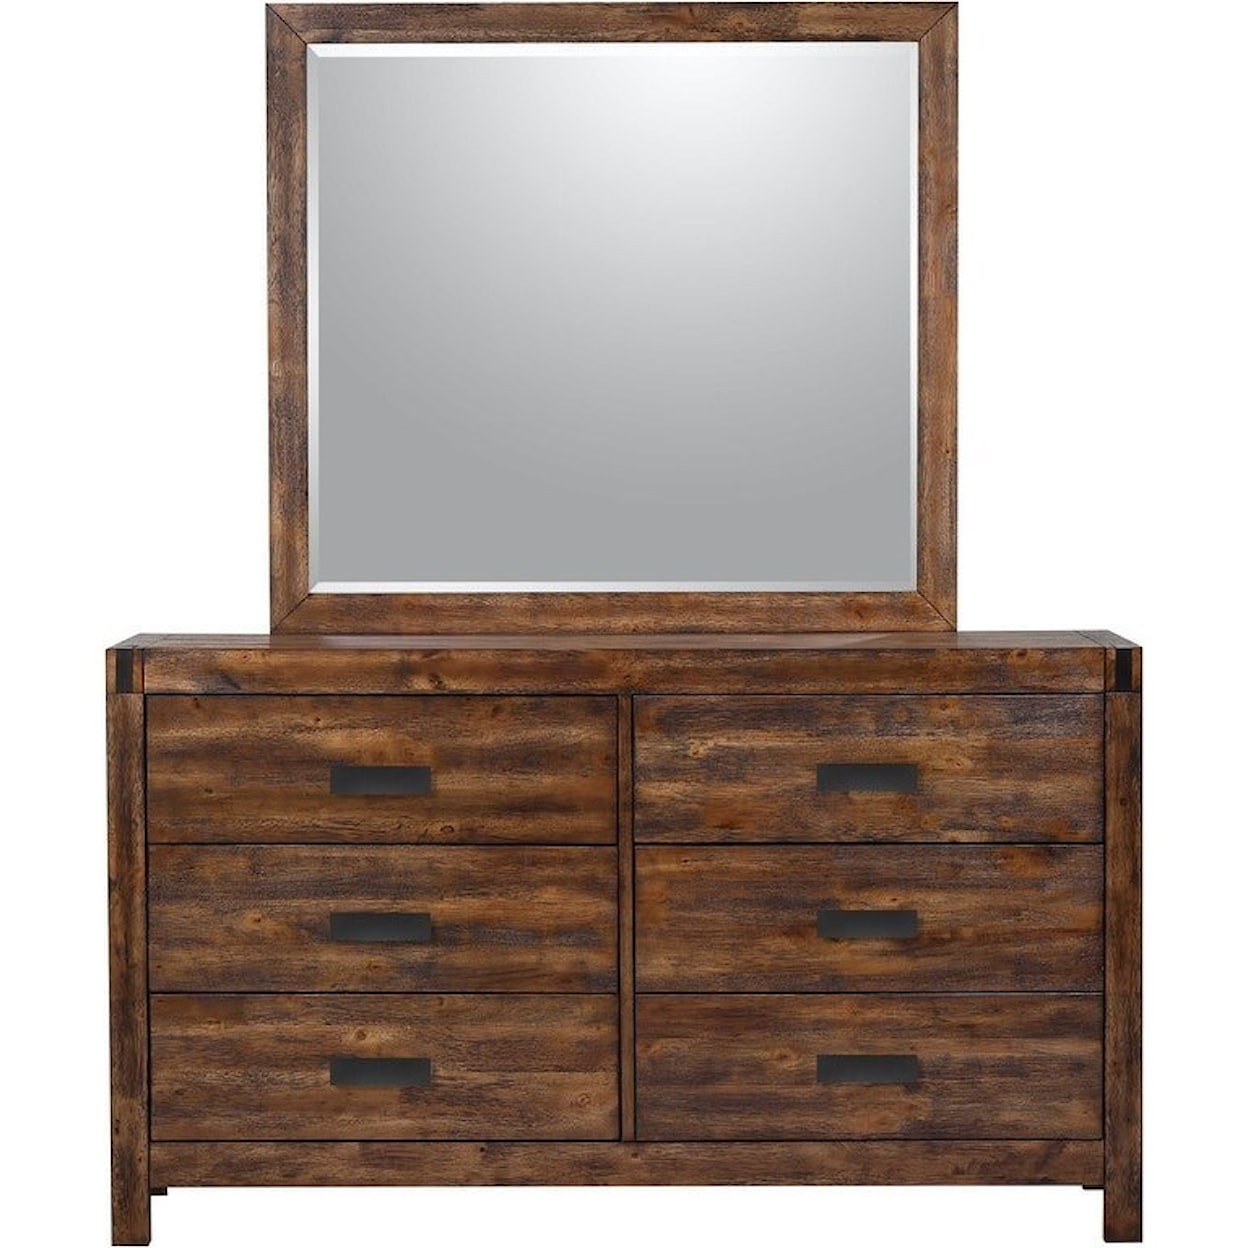 Elements International Warner Dresser and Mirror Set